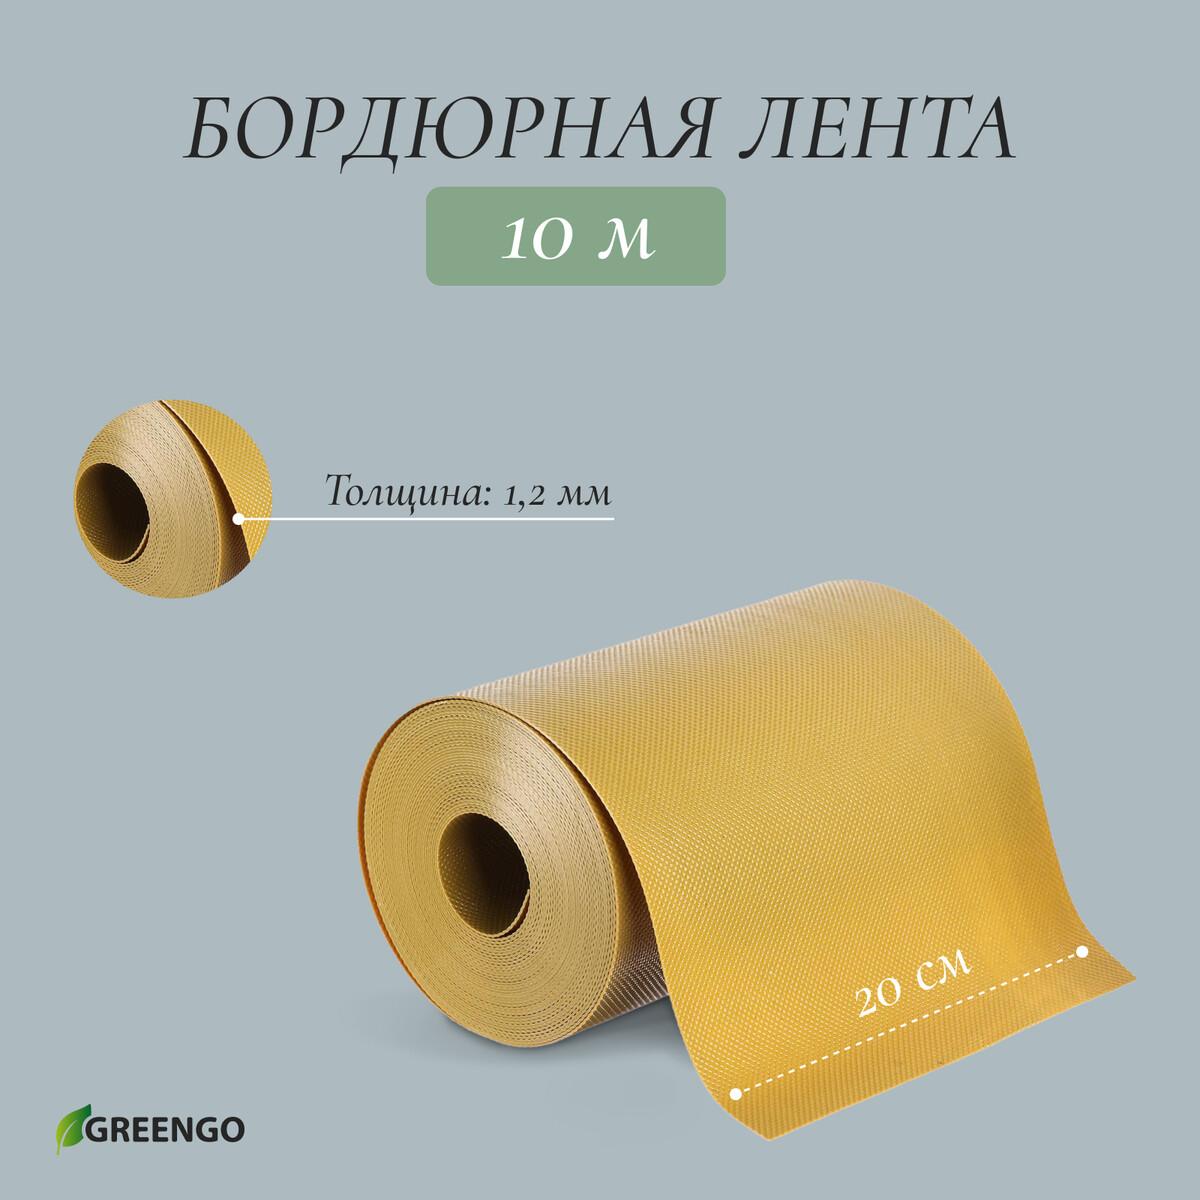 Лента бордюрная, 0.2 × 10 м, толщина 1.2 мм, пластиковая, желтая, greengo лента бордюрная 0 2 × 9 м толщина 1 2 мм пластиковая фигурная коричневая greengo